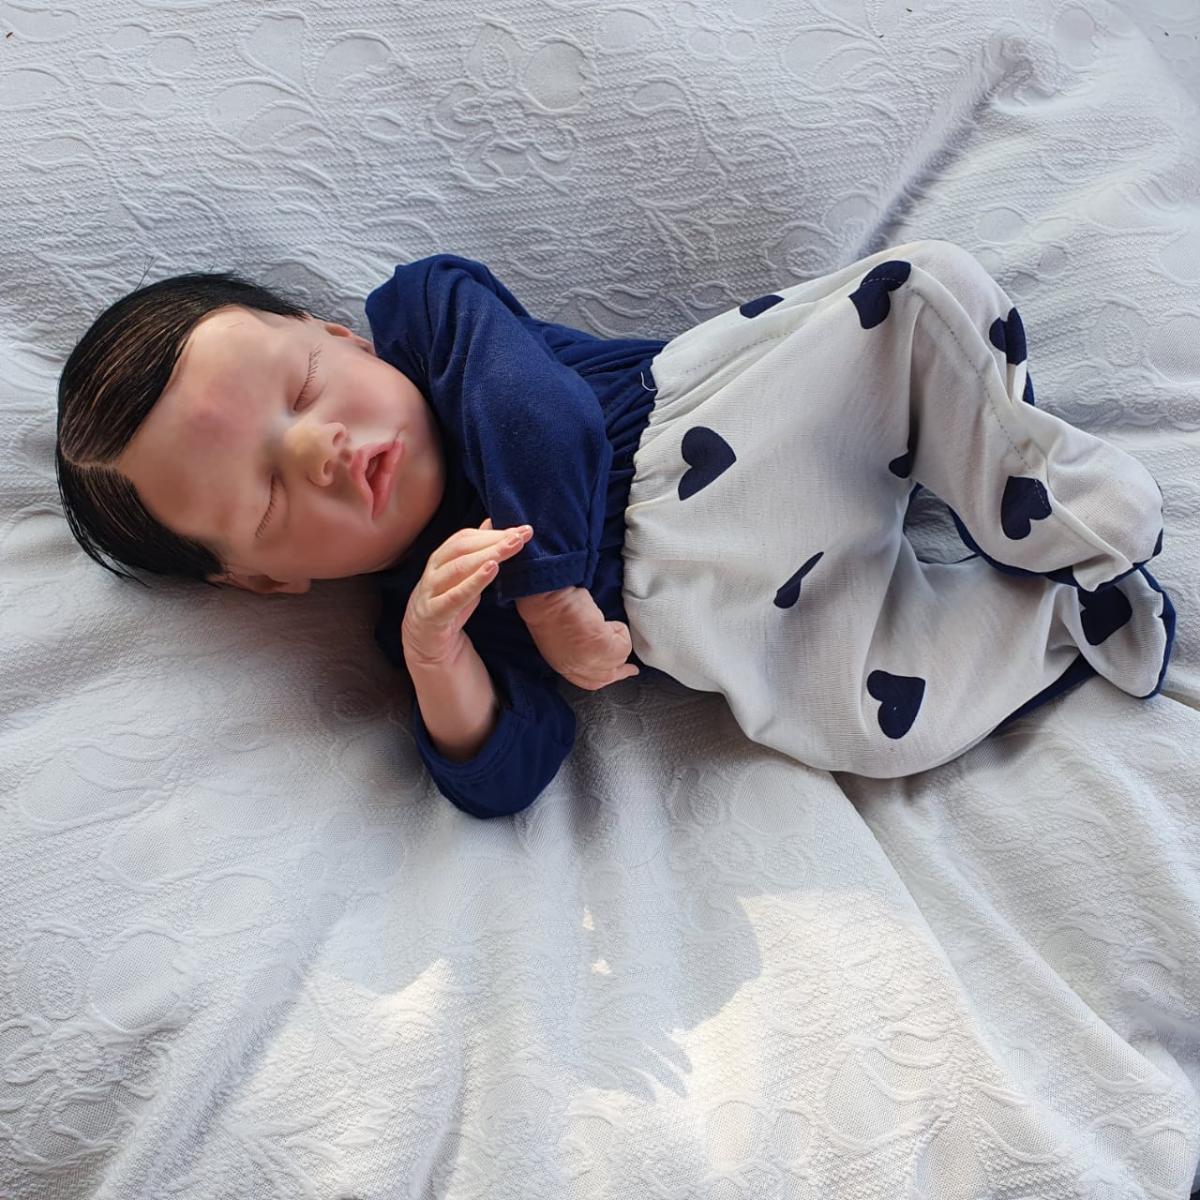 Fotos de Bebê Reborn Menino: A Beleza em Cada Detalhe - Boneca